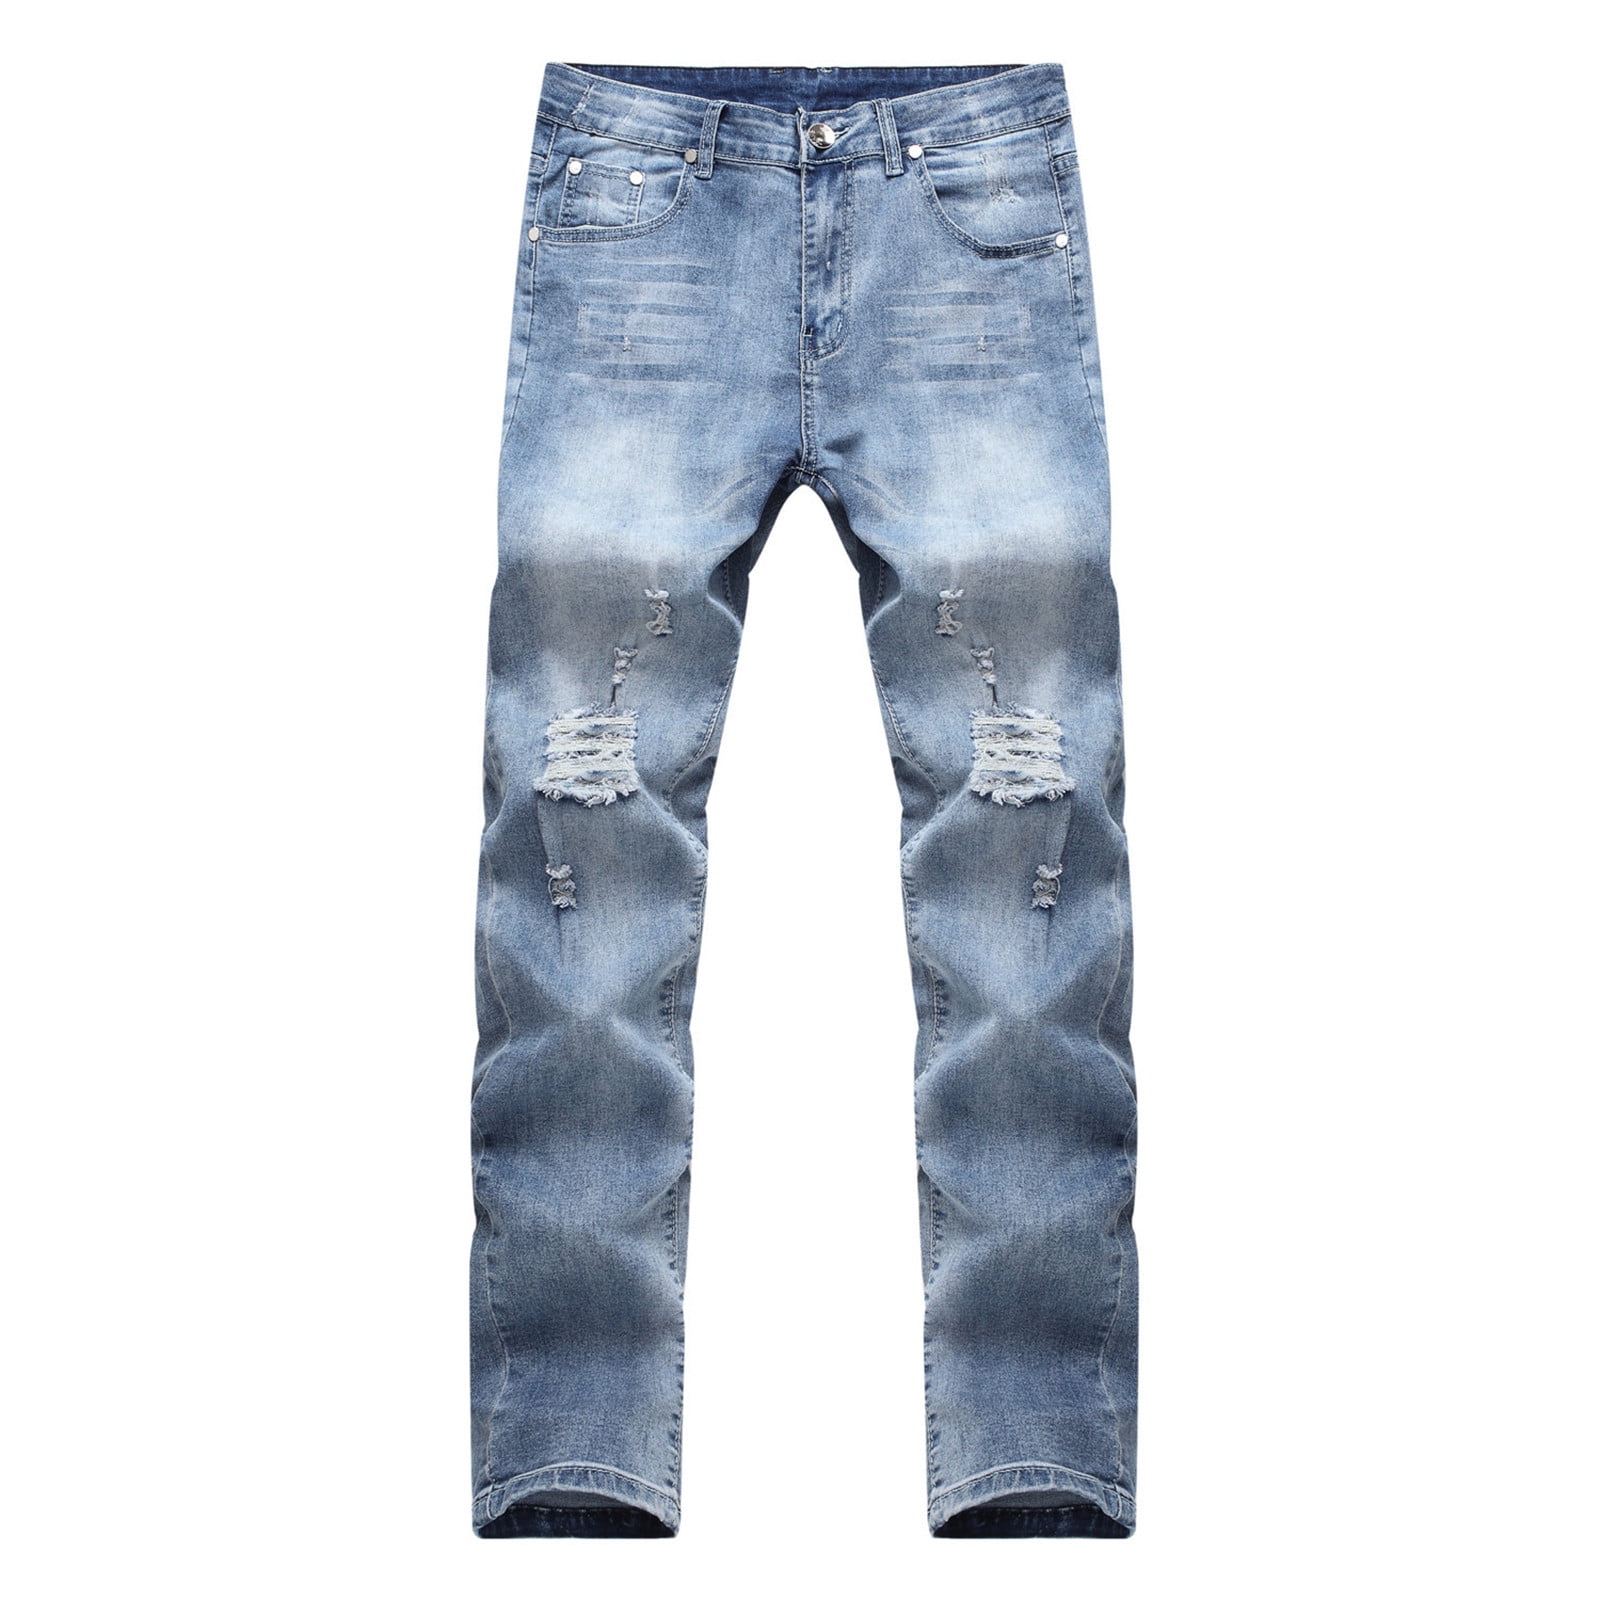 Biker Jeans for Men Slim Fit, Men\'s Comfy Stretch Ripped Distressed Biker  Jeans Pants Rock Revival, Designer Jeans